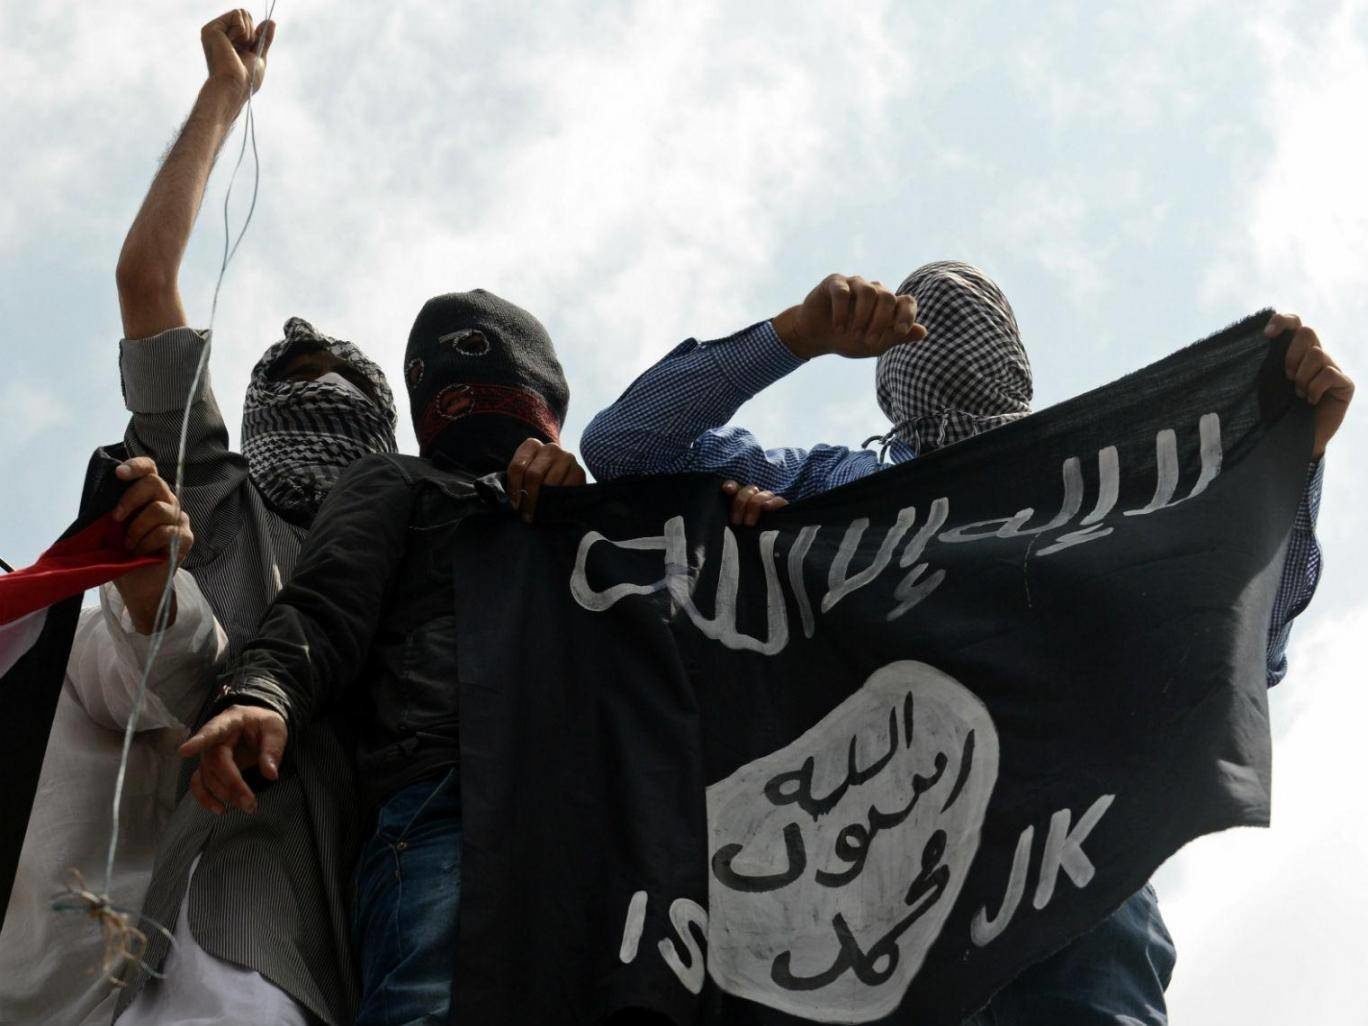 Isis flag held up by demonstrators in Kashmir